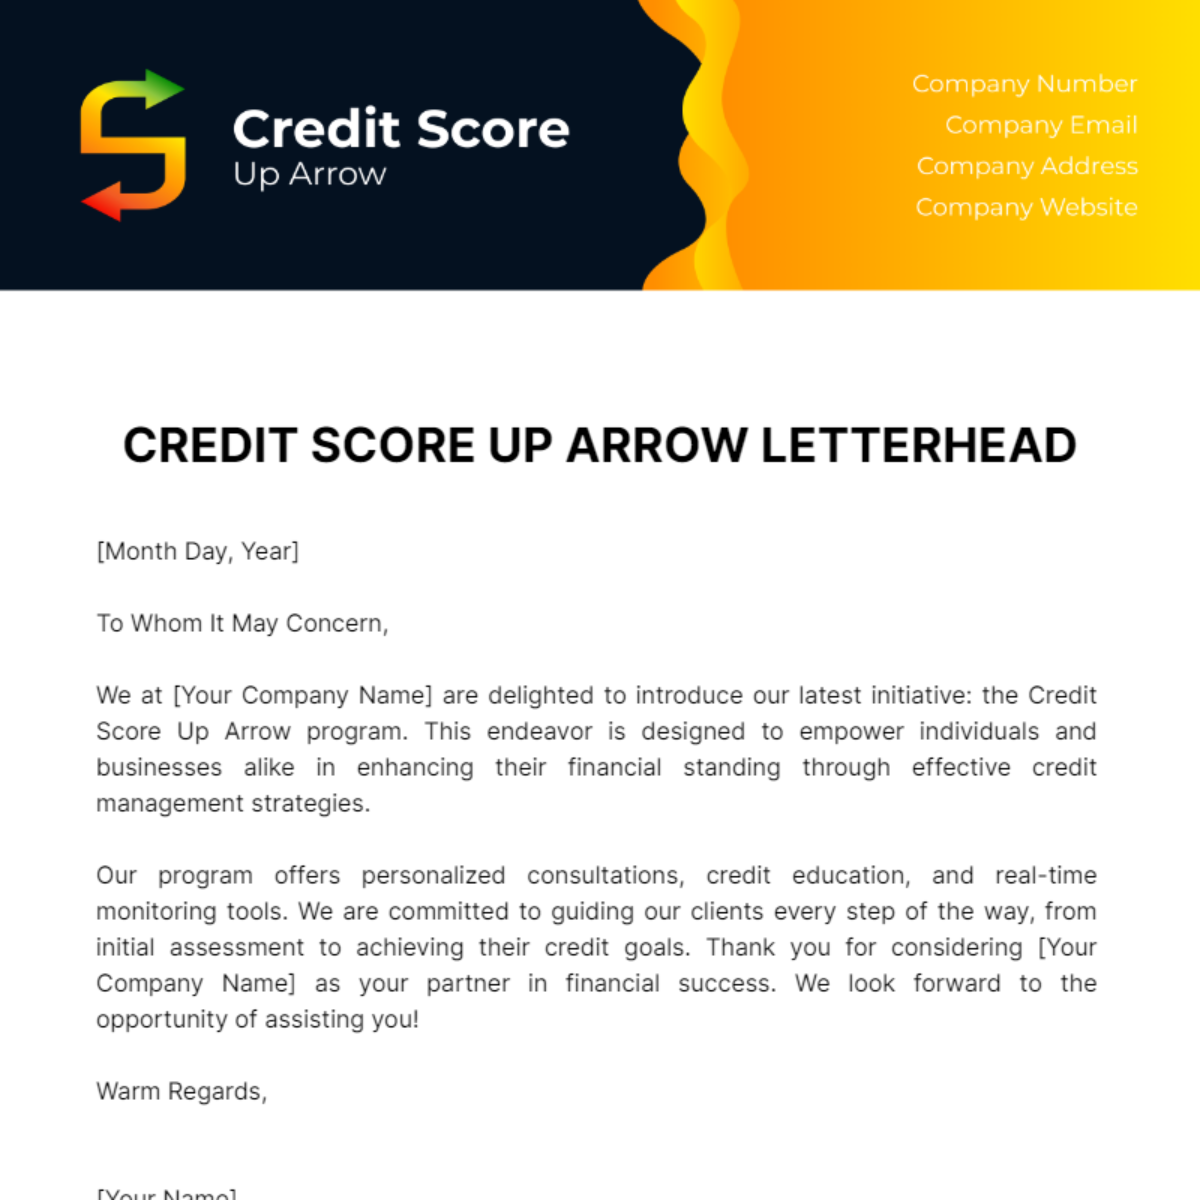 Credit Score Up Arrow Letterhead Template